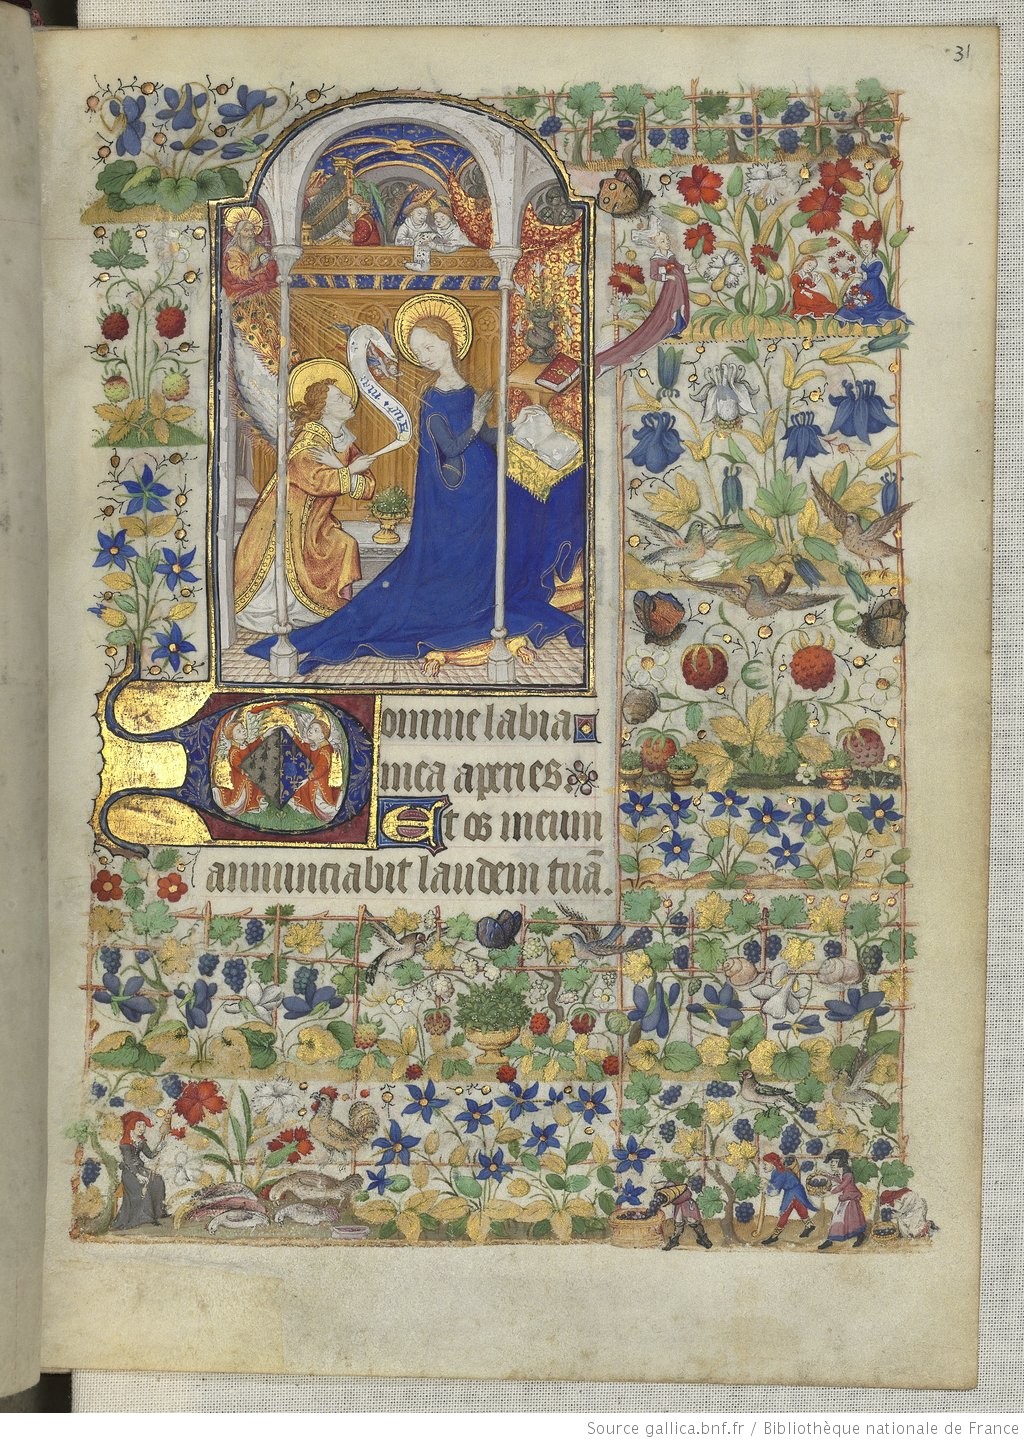 Le parchemin, support privilégié des manuscrits médiévaux